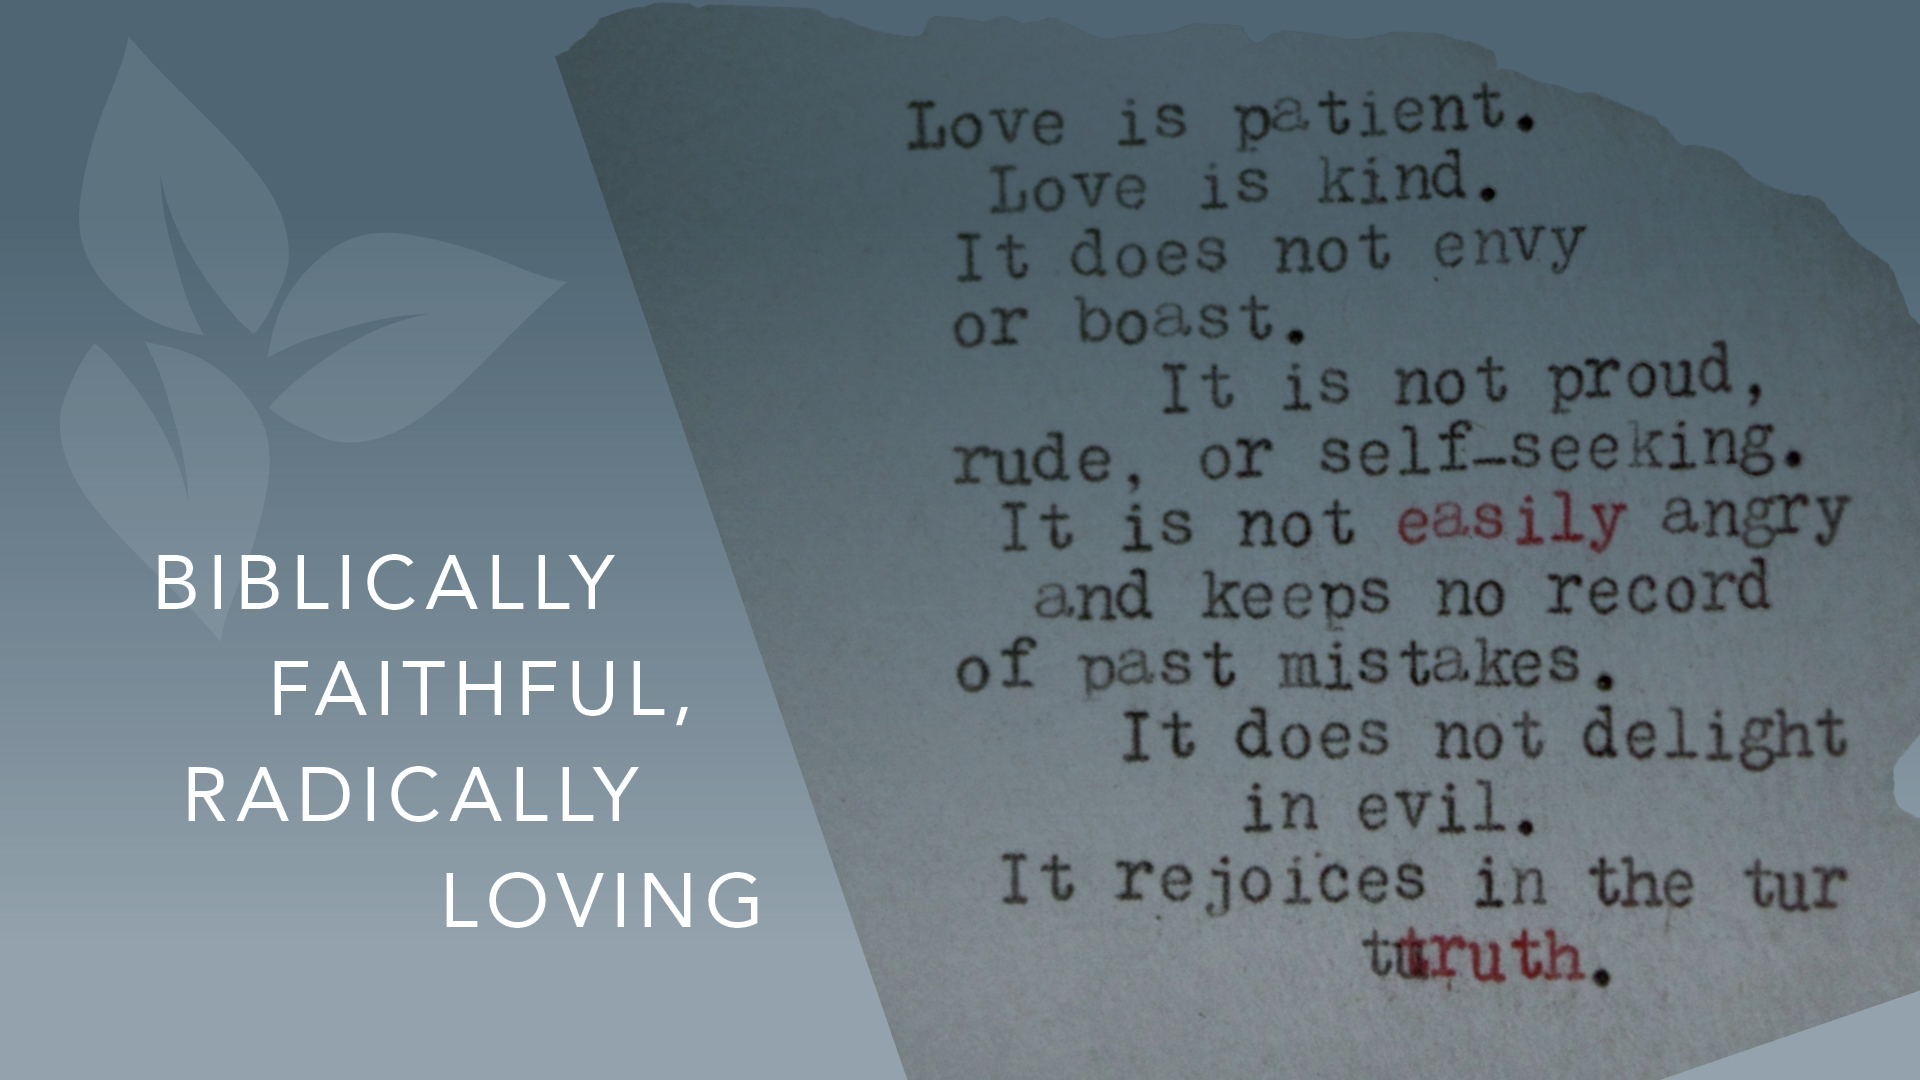 Biblically Faithful, Radically Loving